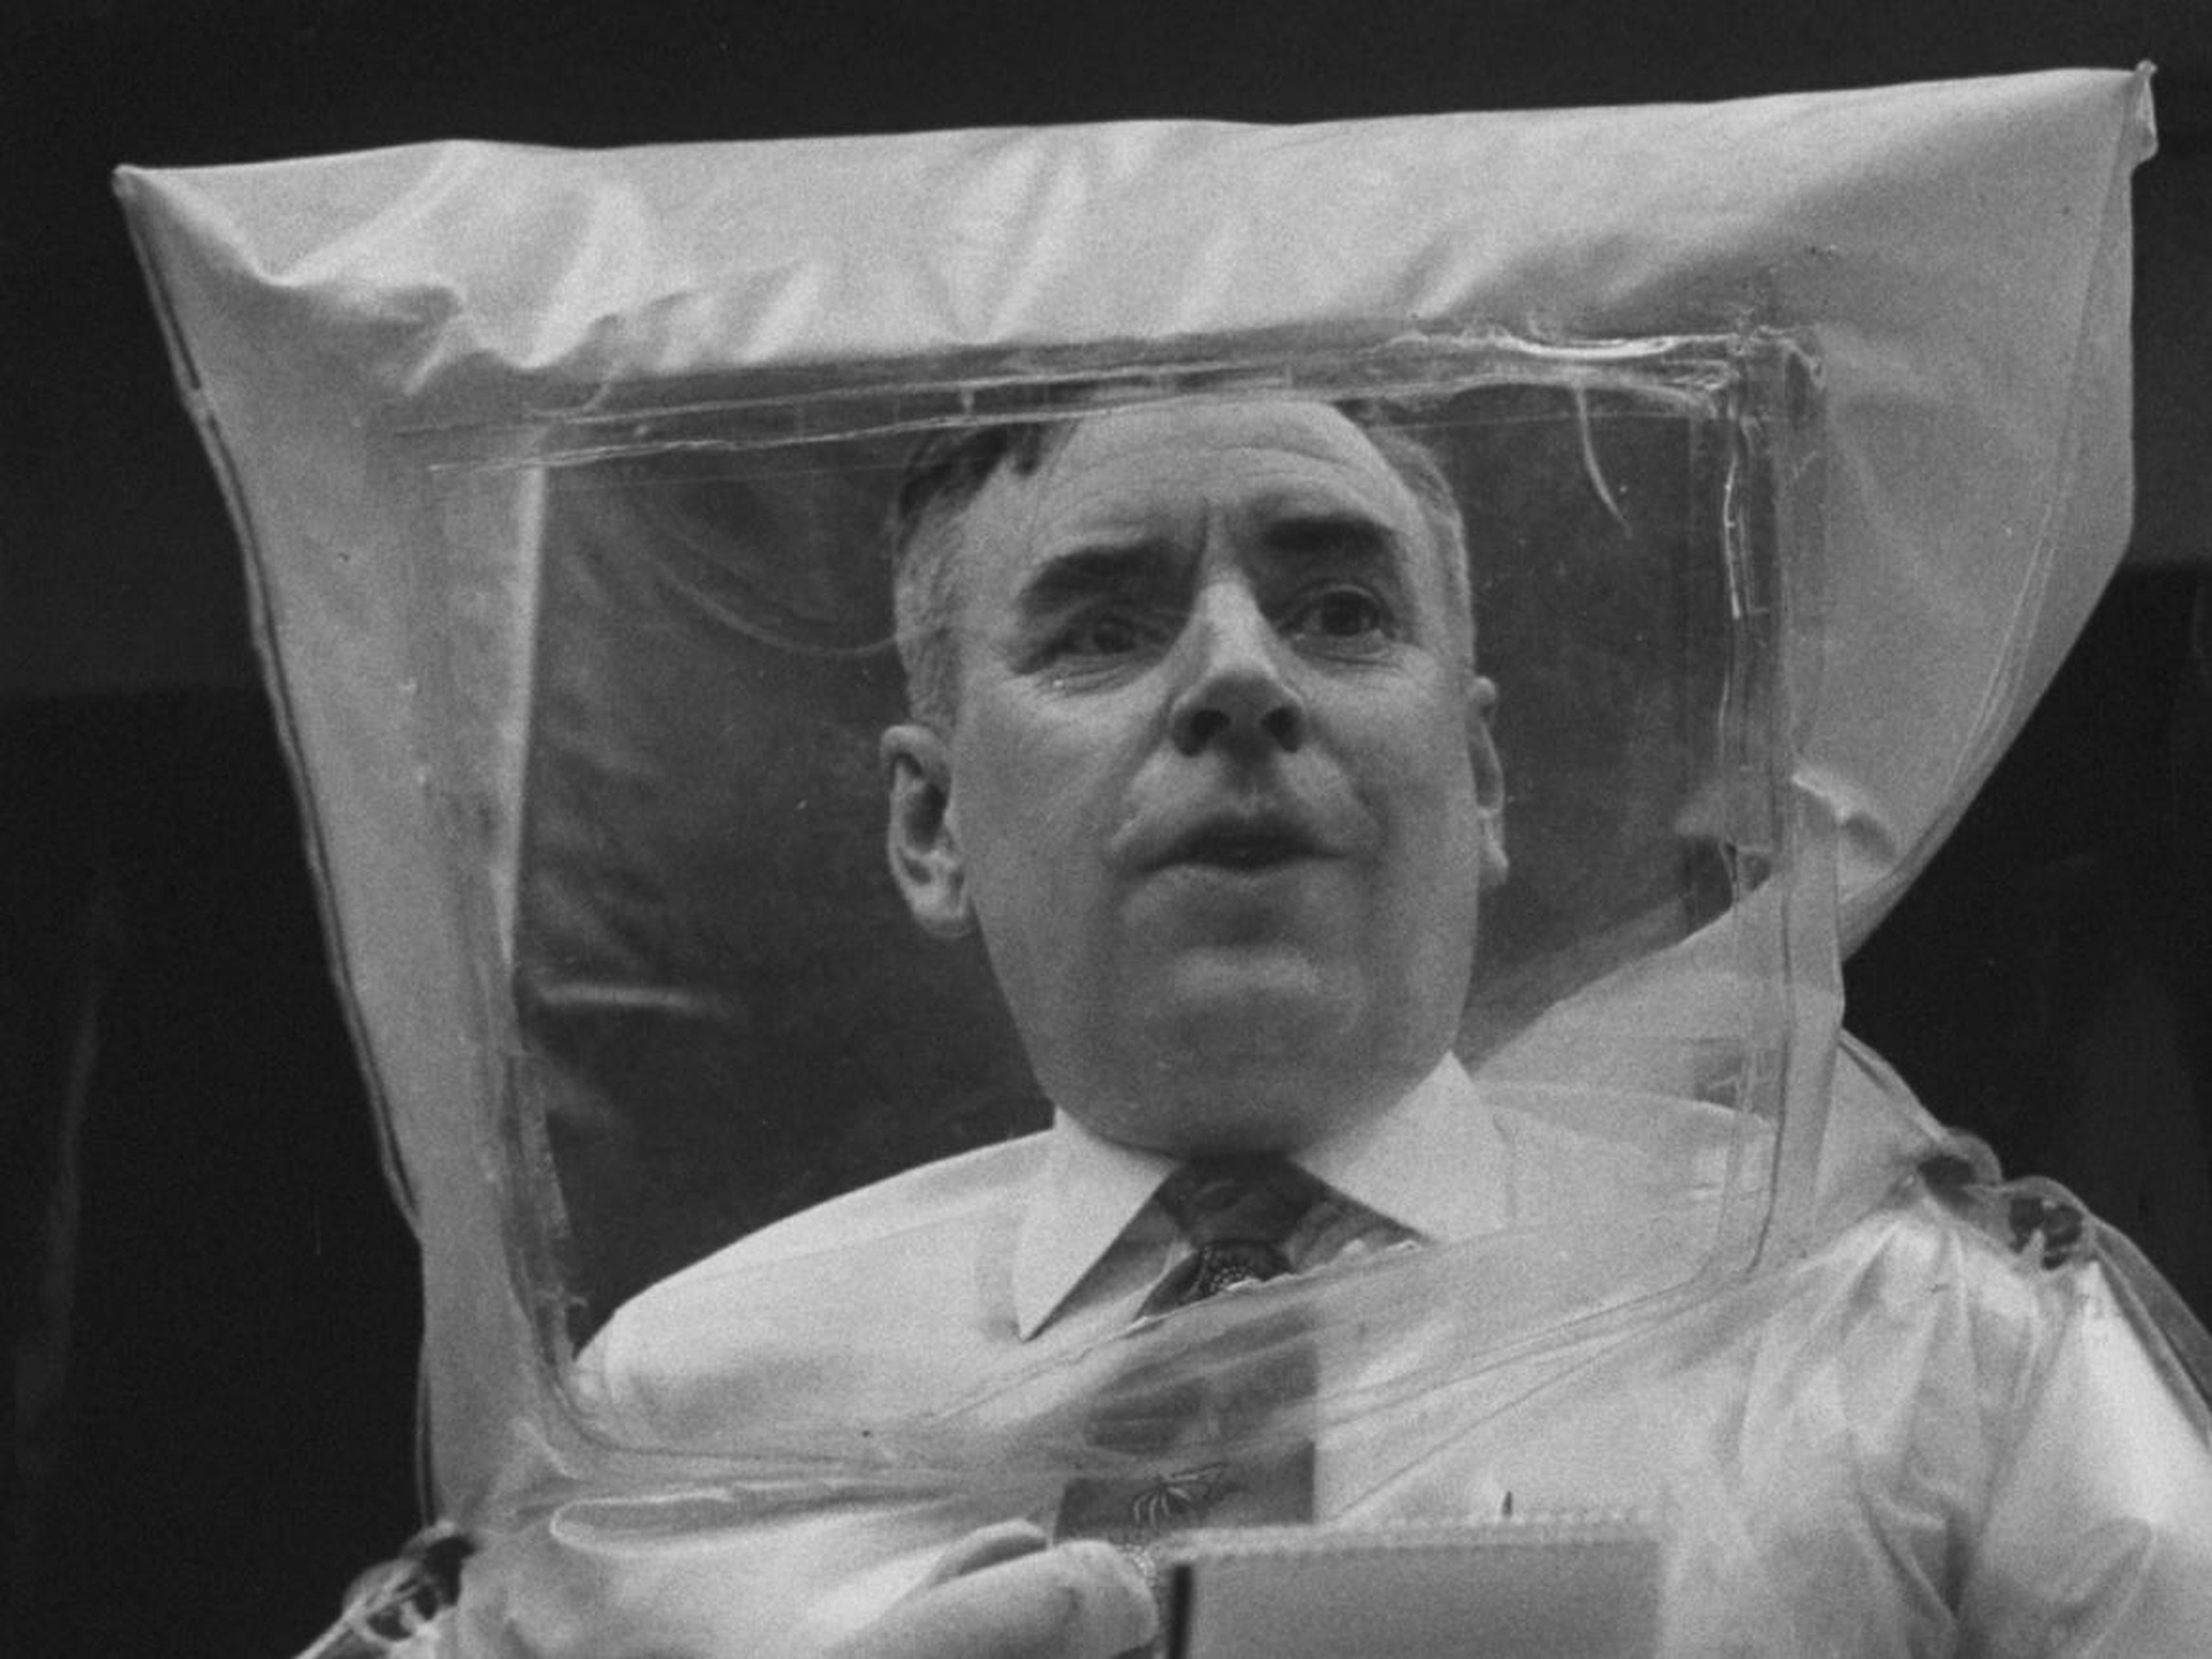 El ingeniero Homer Moulthorp, usando uno de los trajes de plástico de polietileno que inventó para proteger a los técnicos de la radiación en las plantas de energía atómica.